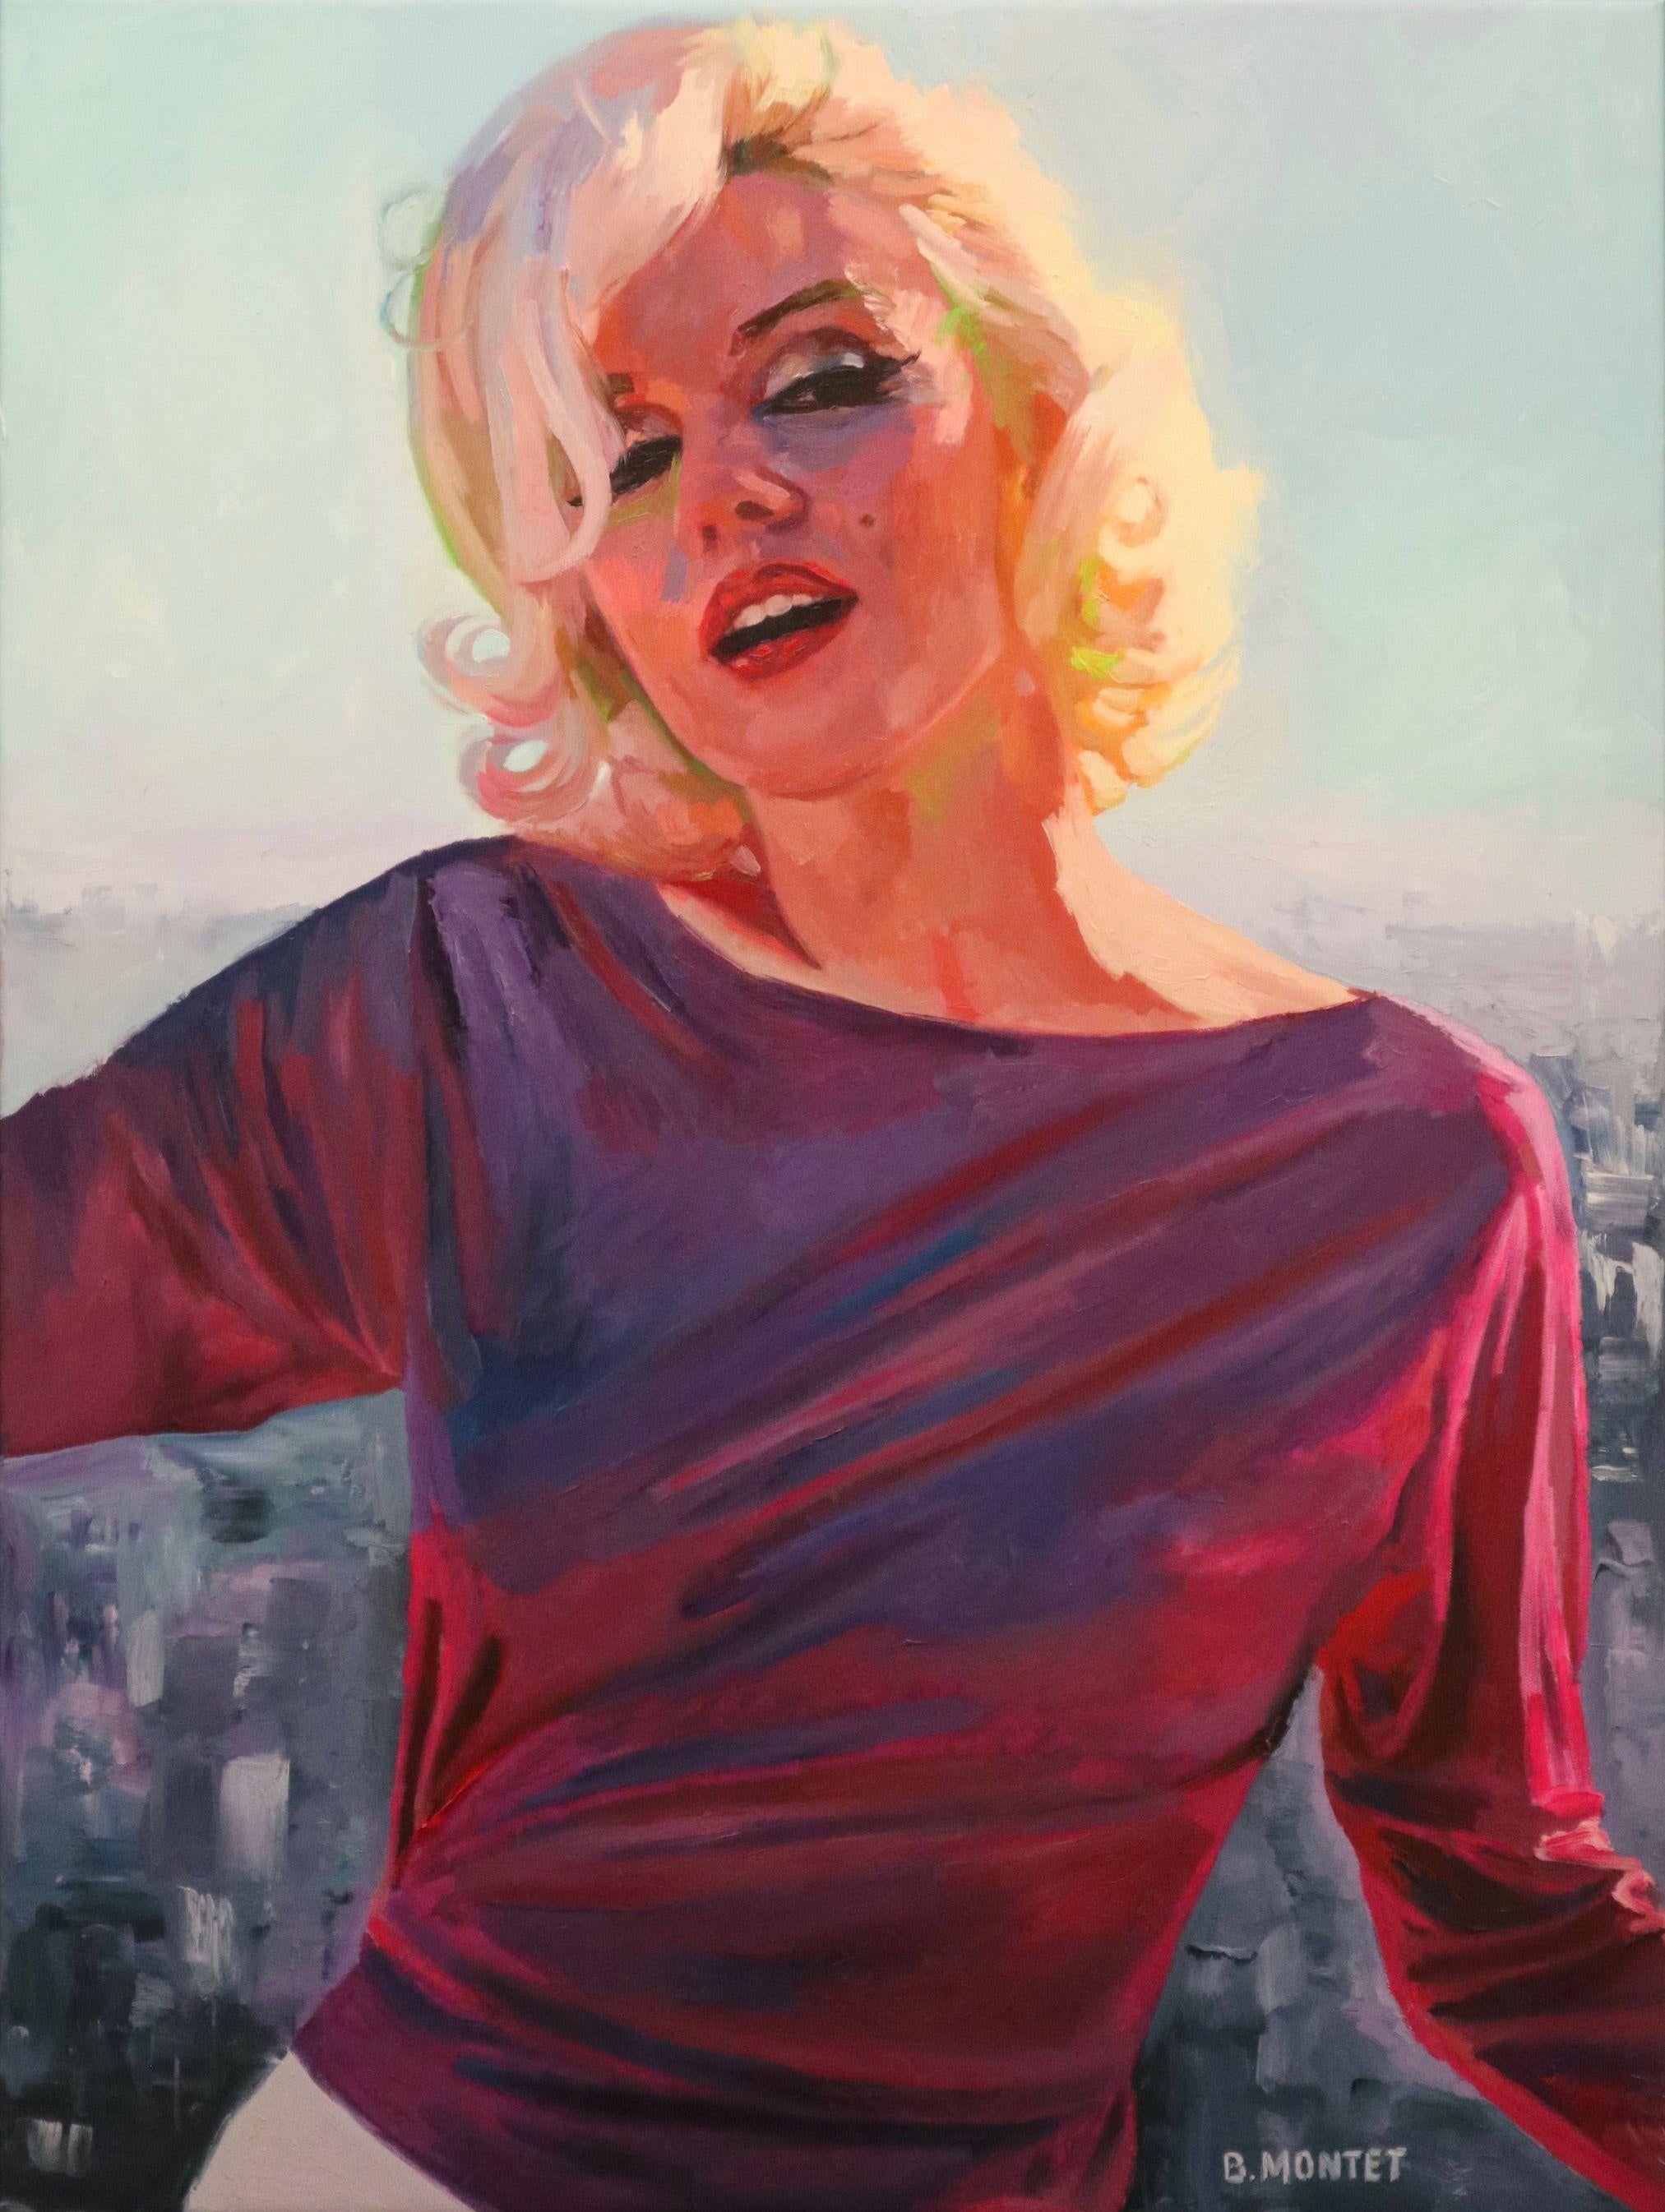 La Marilyn Pop Art aux couleurs vives et acidulÃ©es est rÃ©alisÃ©e par Benoit Montet avec beaucoup de justesse et de rÃ©alisme.  Cette peinture nous Ã©tonne par sa technique et son travail trÃ¨s impressionniste .   Le mÃ©lange de couleurs